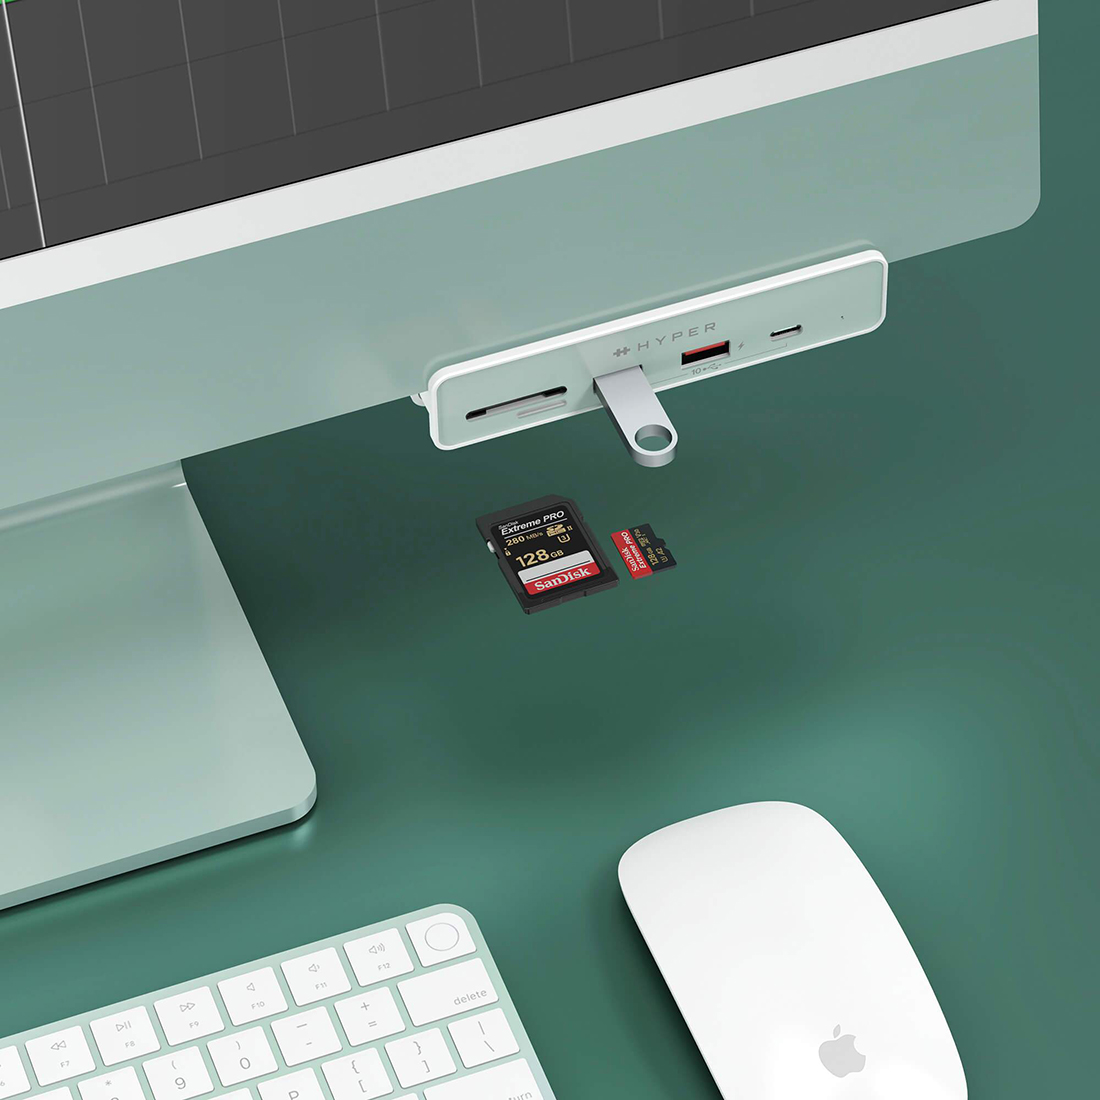 Hub USB-C Hyper Drive 6-in-1 for iMac 24-inch